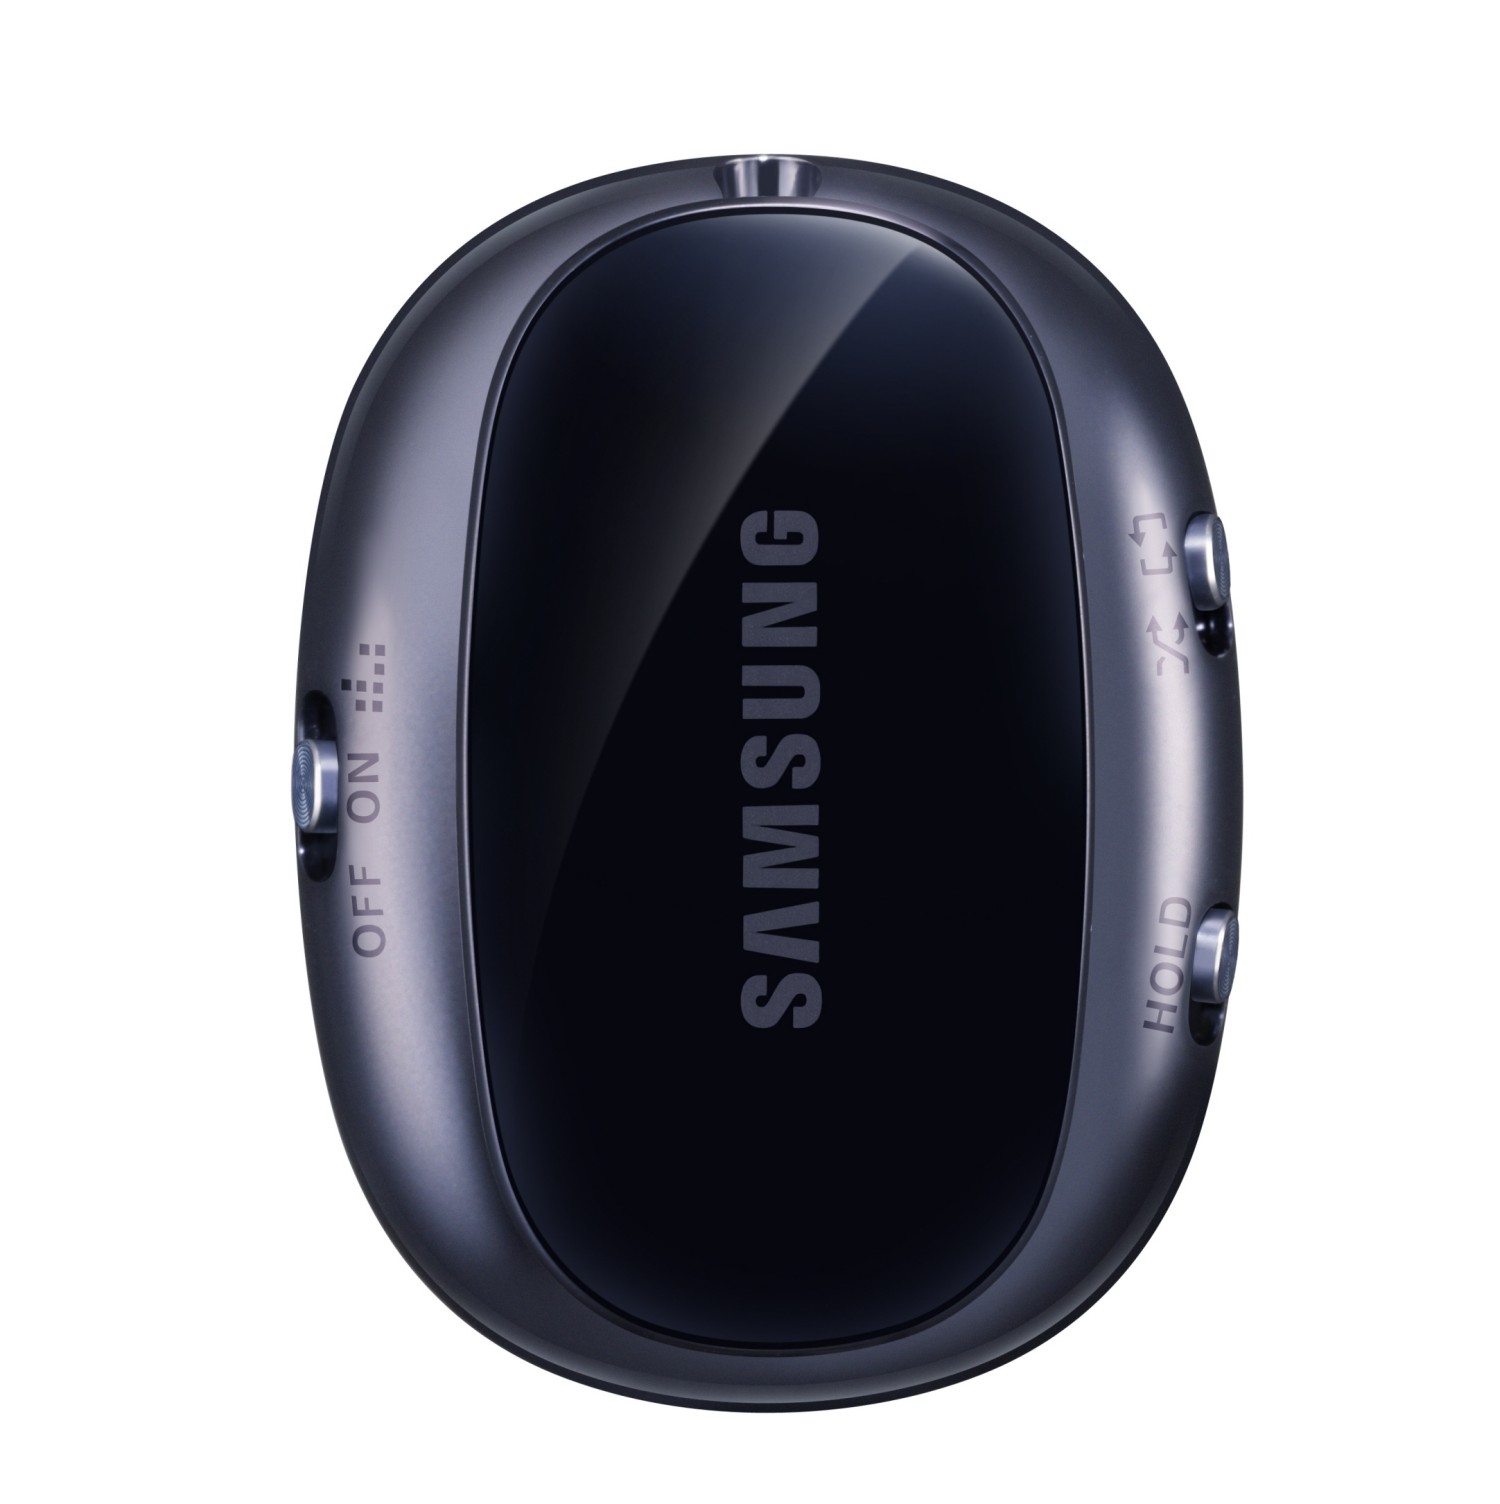 Samsung S Pebble: reproductor MP3 del Galaxy S III